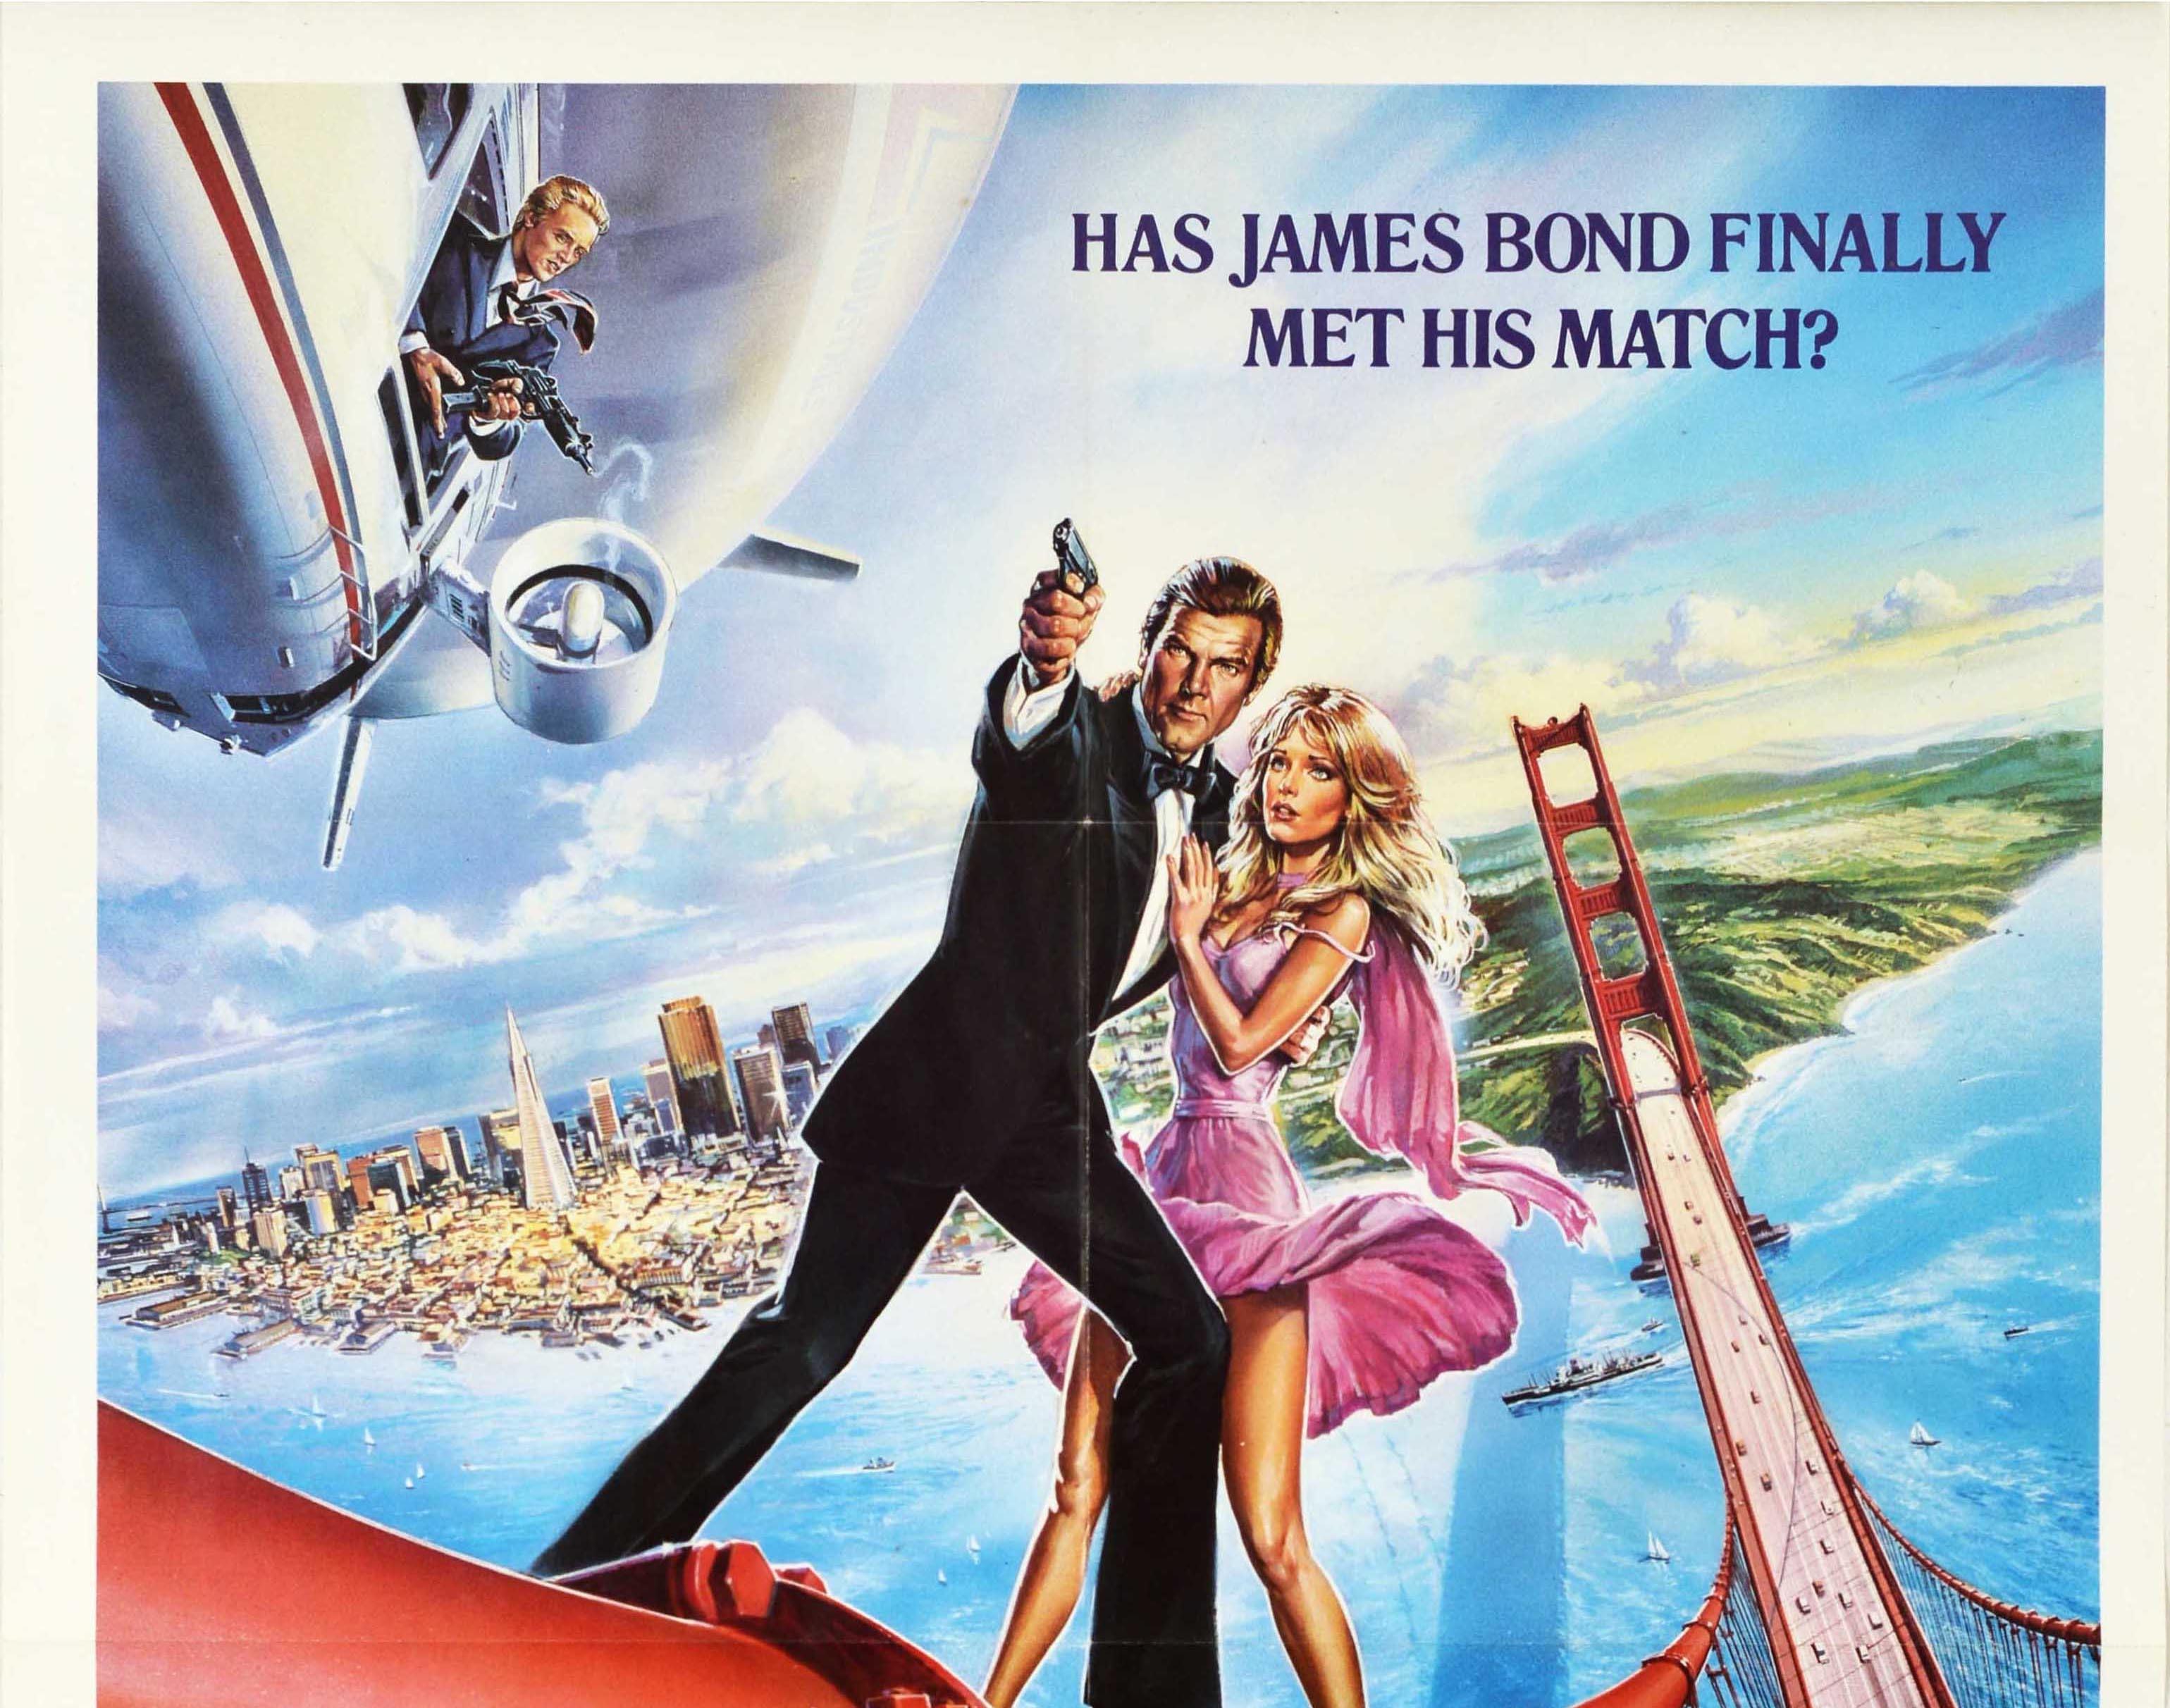 Affiche vintage originale du film de James Bond 007, A View To A Kill - James Bond a-t-il enfin rencontré son adversaire ? - réalisé par John Glen avec Roger Moore dans le rôle de l'espion britannique James Bond, Grace Jones dans le rôle de May Day,